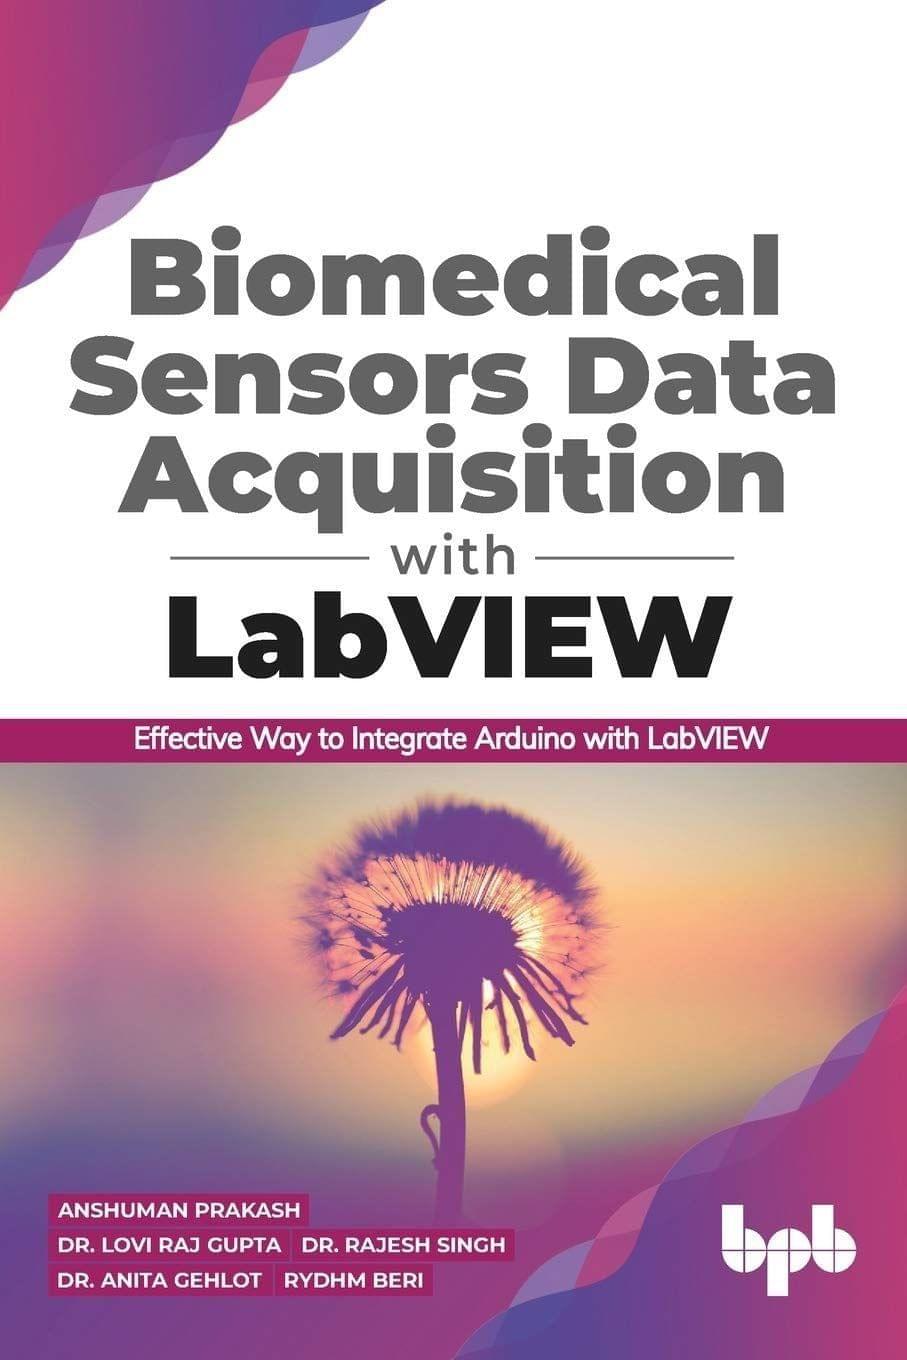 Biomedical Sensors Data Acquisition with LabVIEW [Paperback] Anshuman Prakash; Dr. Lovi Raj Gupta; Dr. Rajesh Singh; Dr. Anita Gehlot and Rydhm Beri